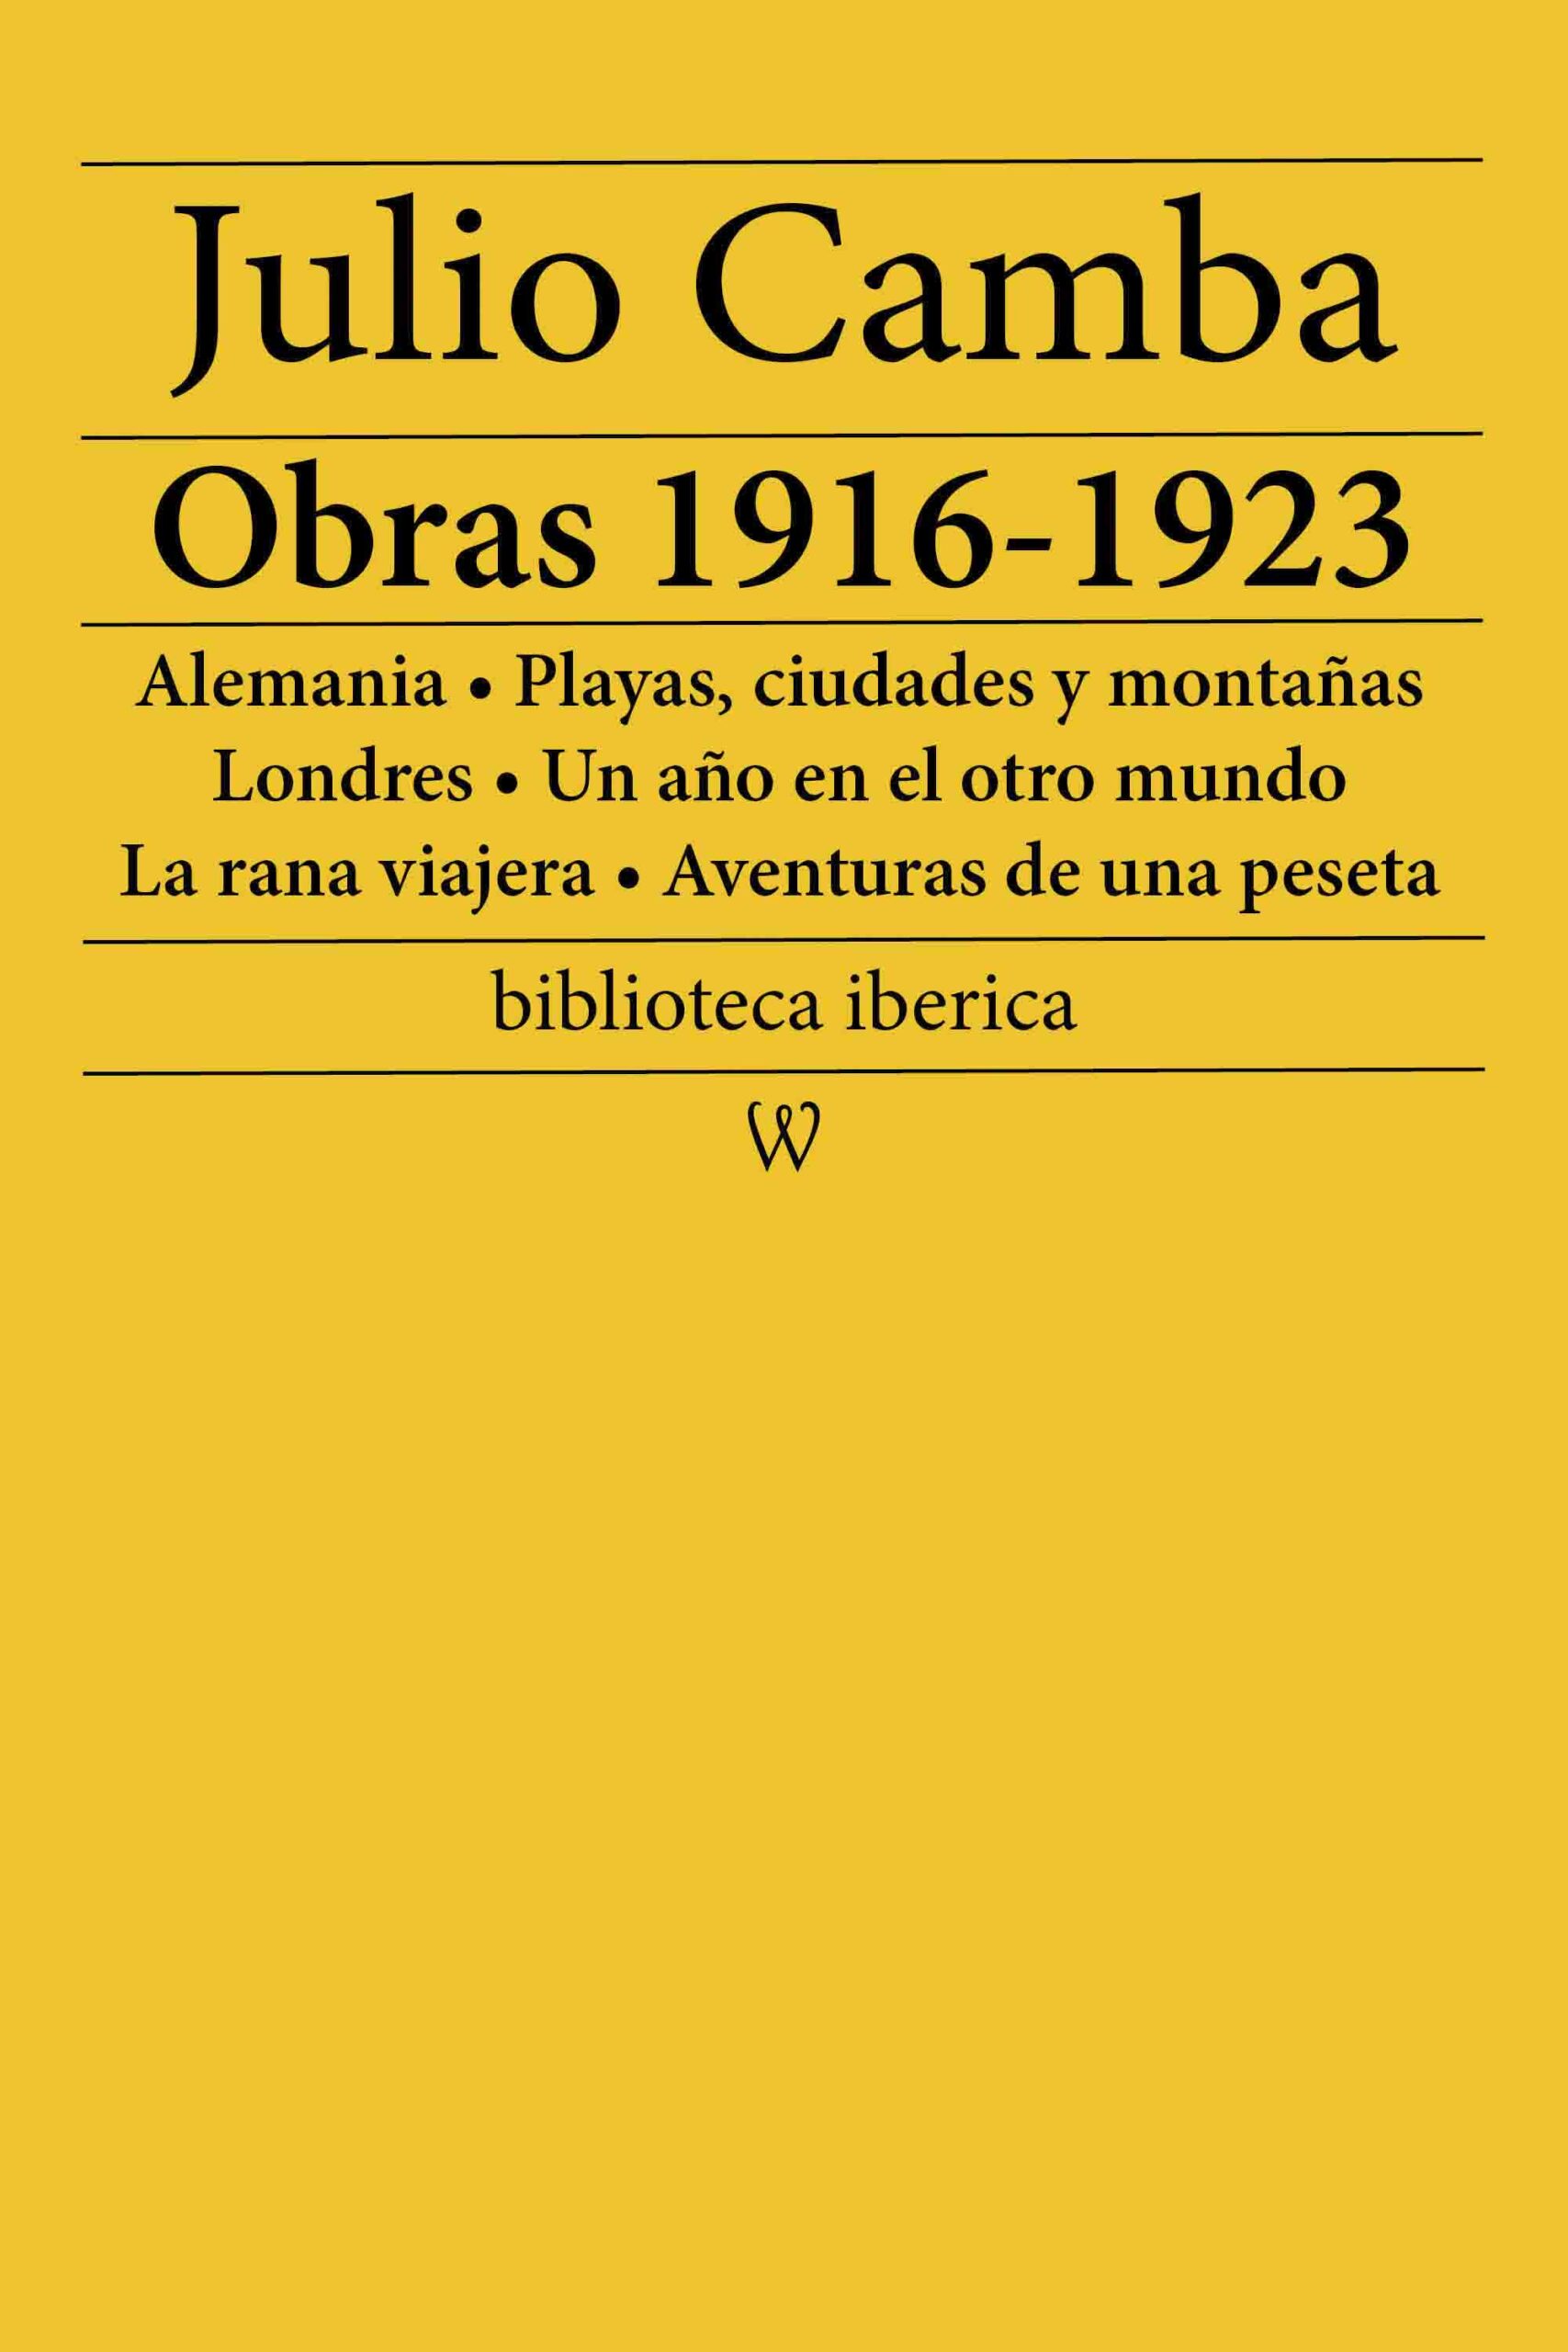 Julio Camba: Obras 1916-1923